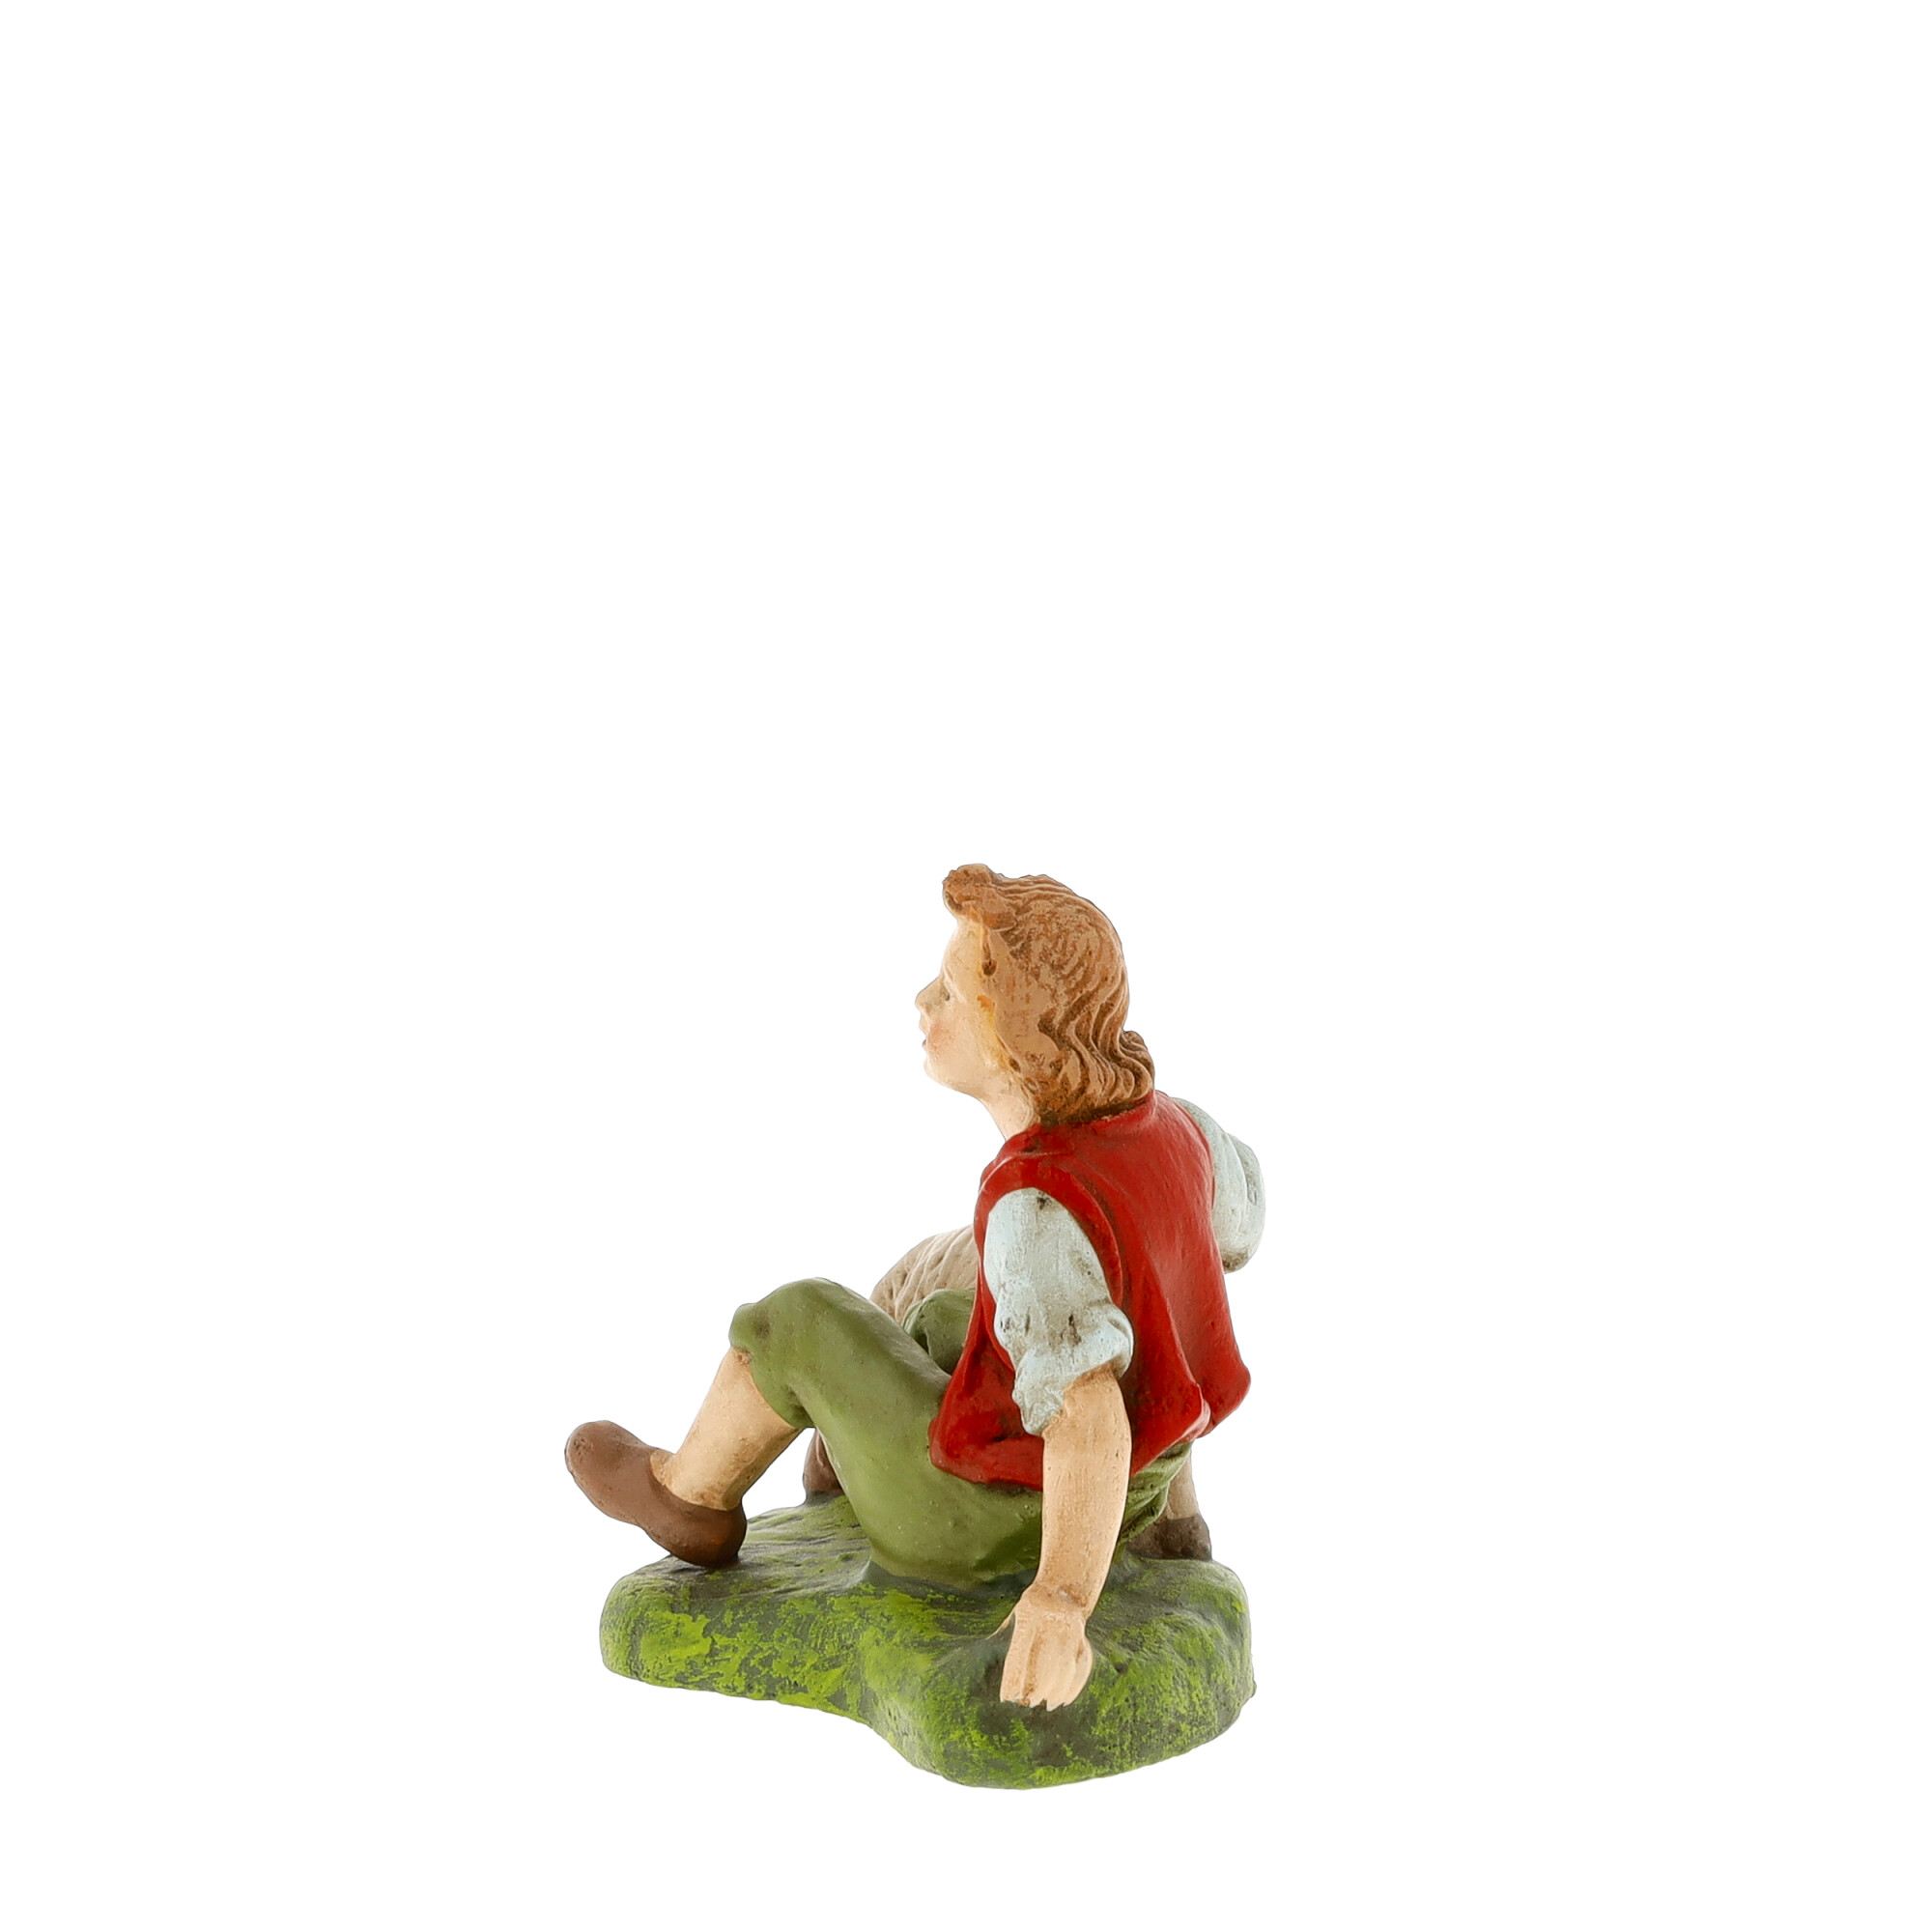 Hirte sitzend mit Schaf, zu 10 - 12cm Krippenfiguren - Original MAROLIN® - Krippenfigur für Ihre Weihnachtskrippe - Made in Germany